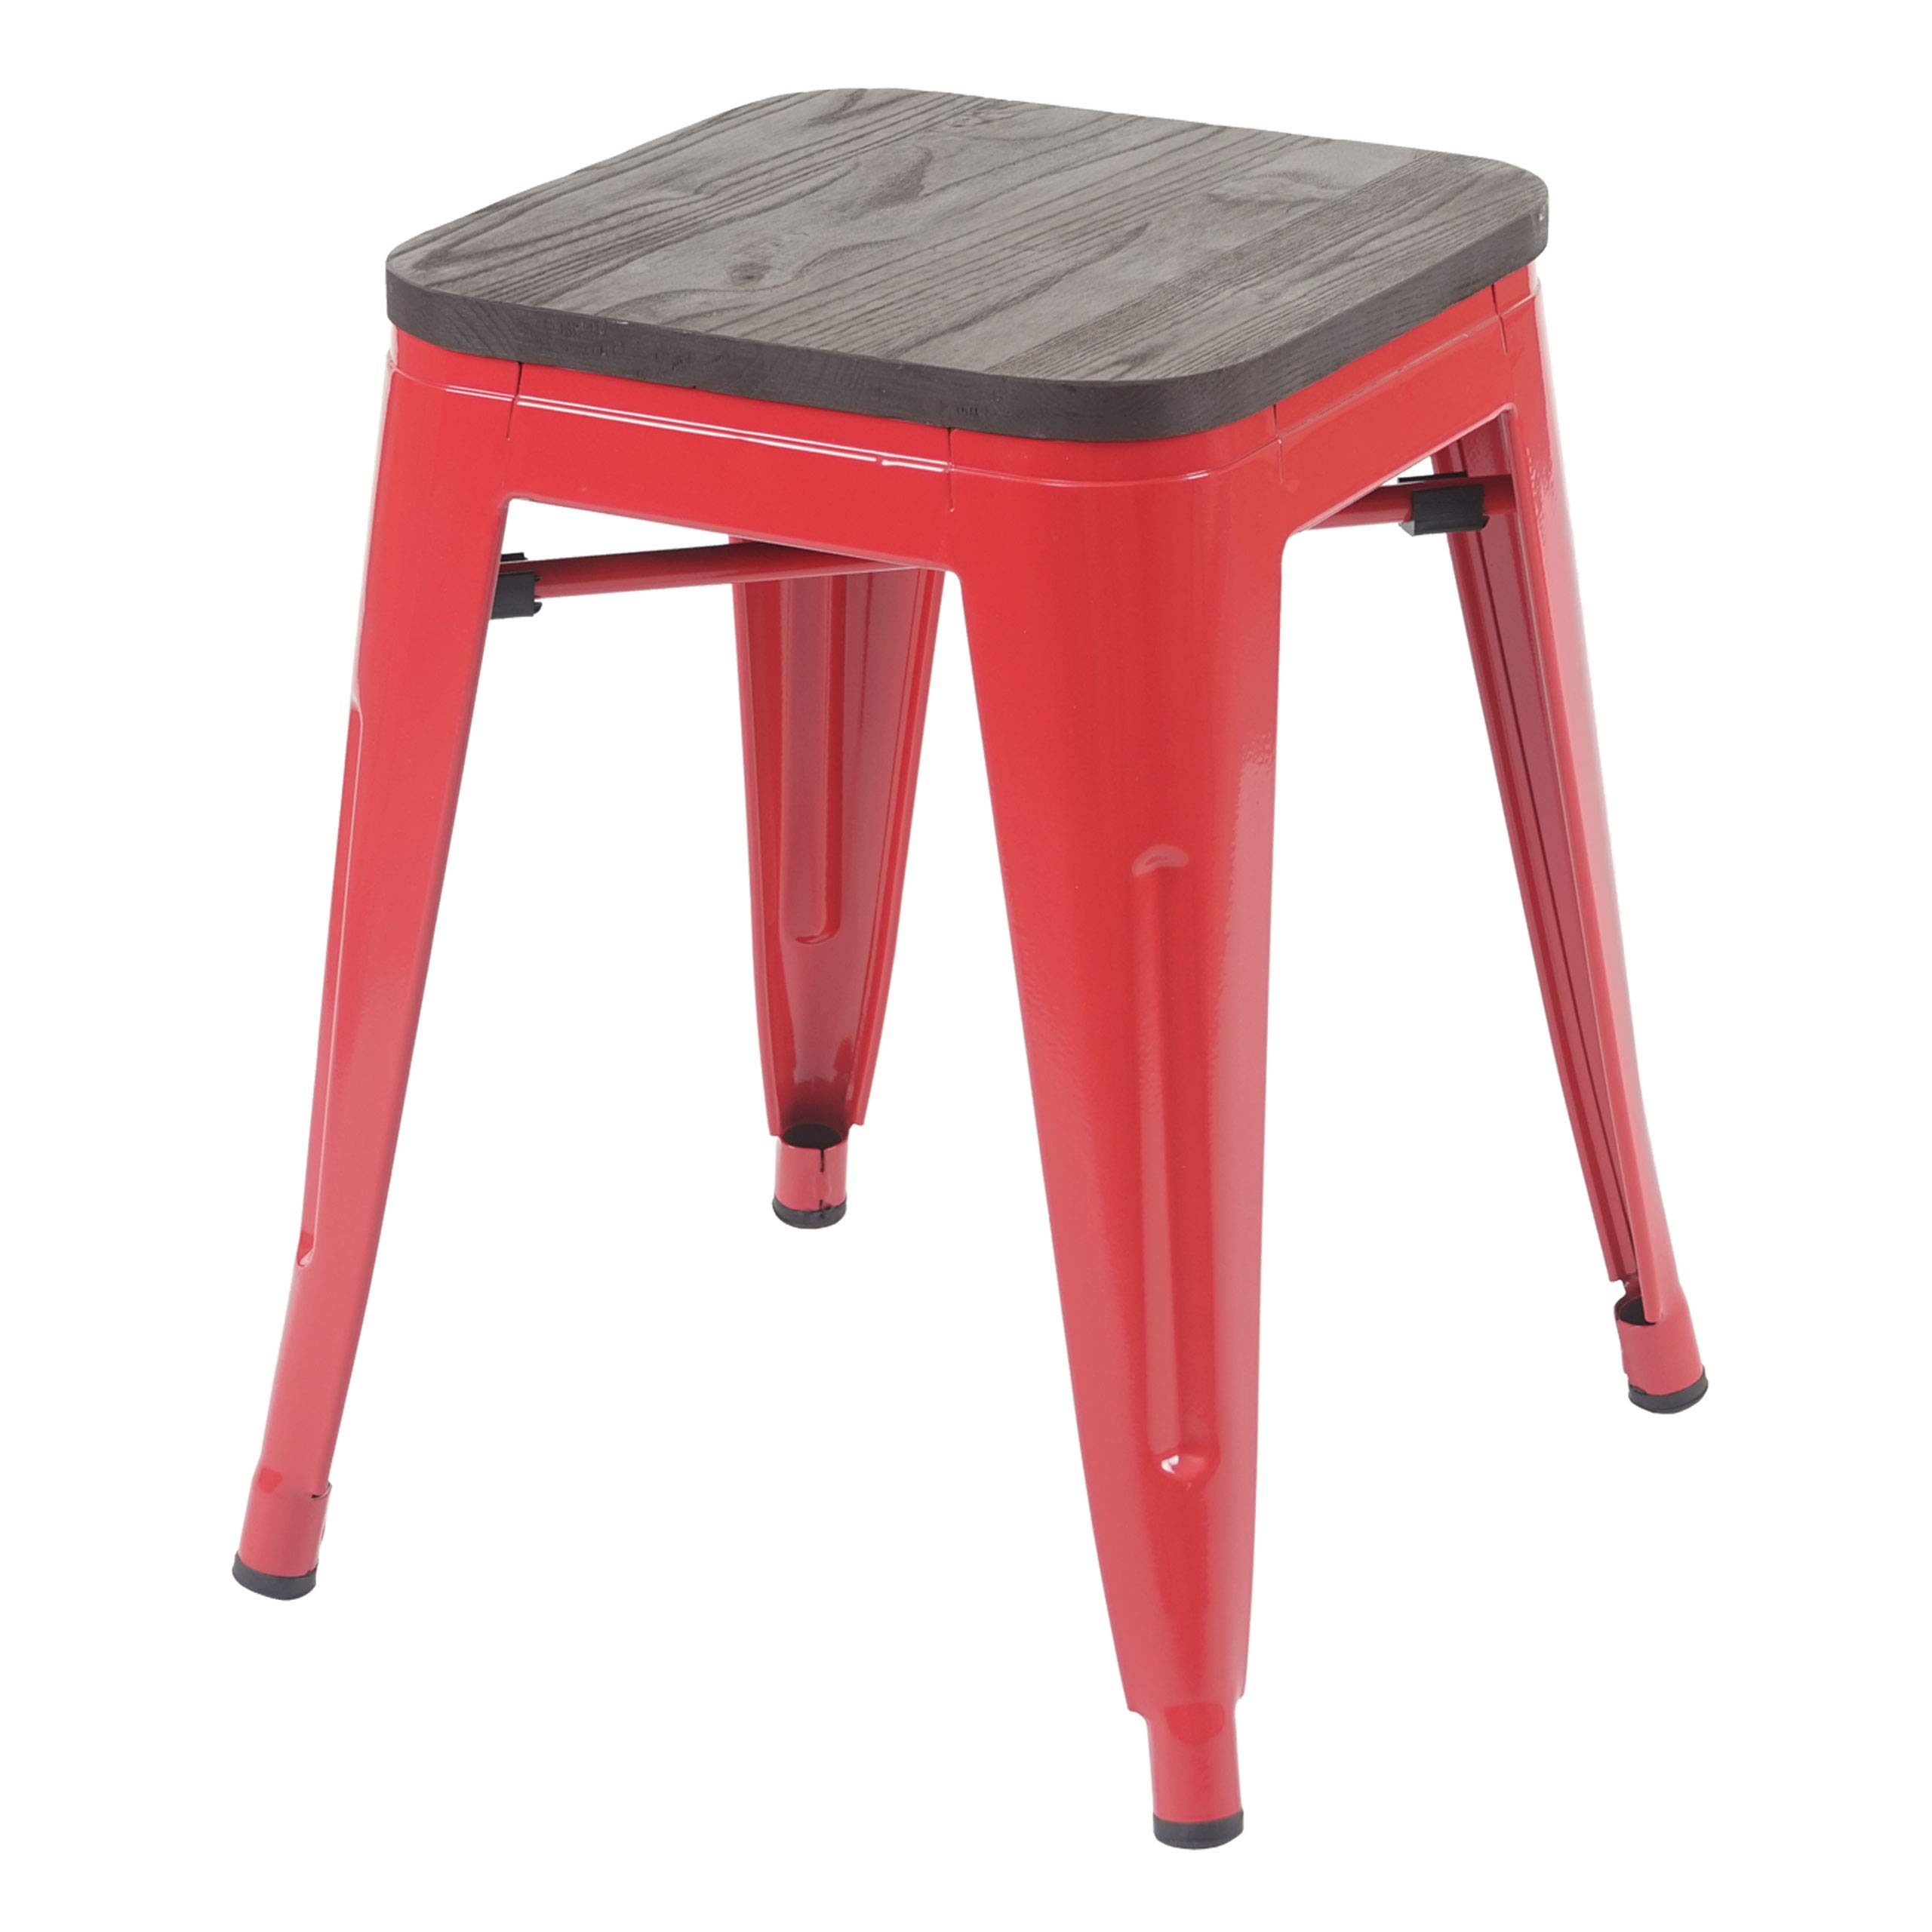 Hocker HWC-A73 inkl. Holz-Sitzfläche, Metallhocker Sitzhocker, Metall Industriedesign stapelbar - rot